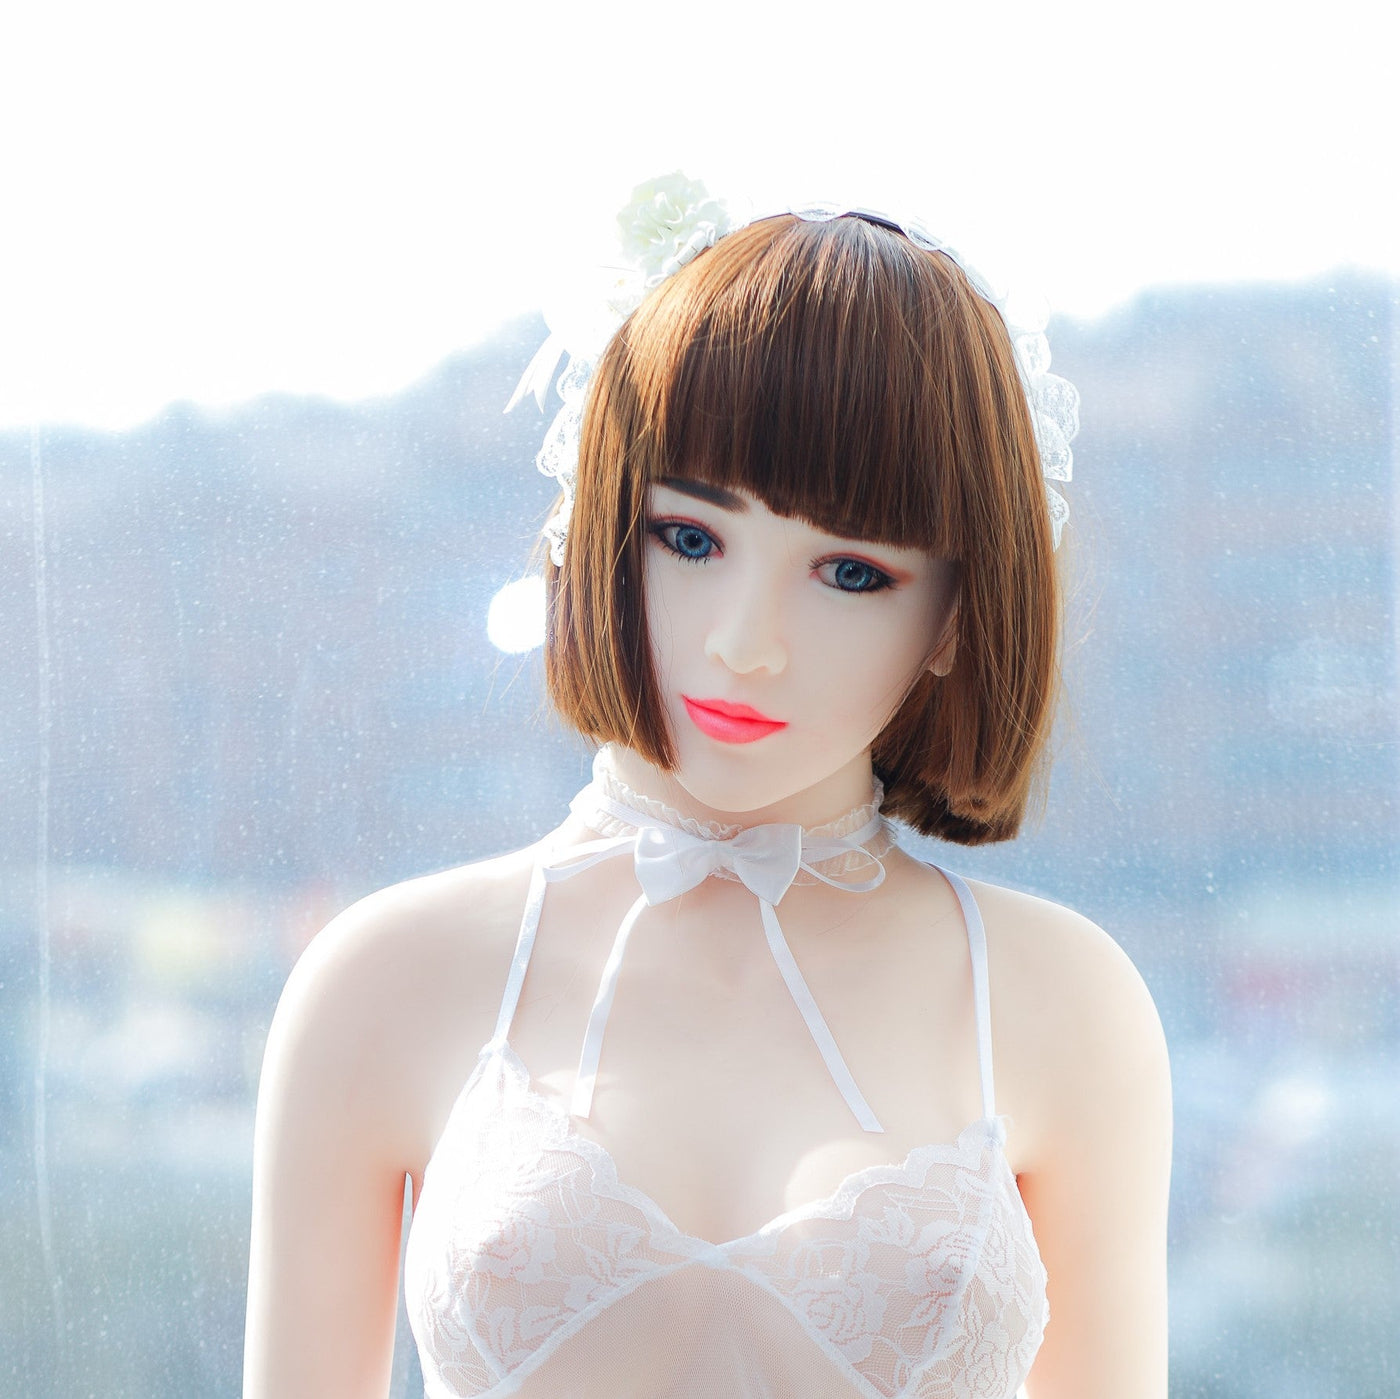 Neodoll Sugar Babe - Kayleigh - Sex Doll Head - White